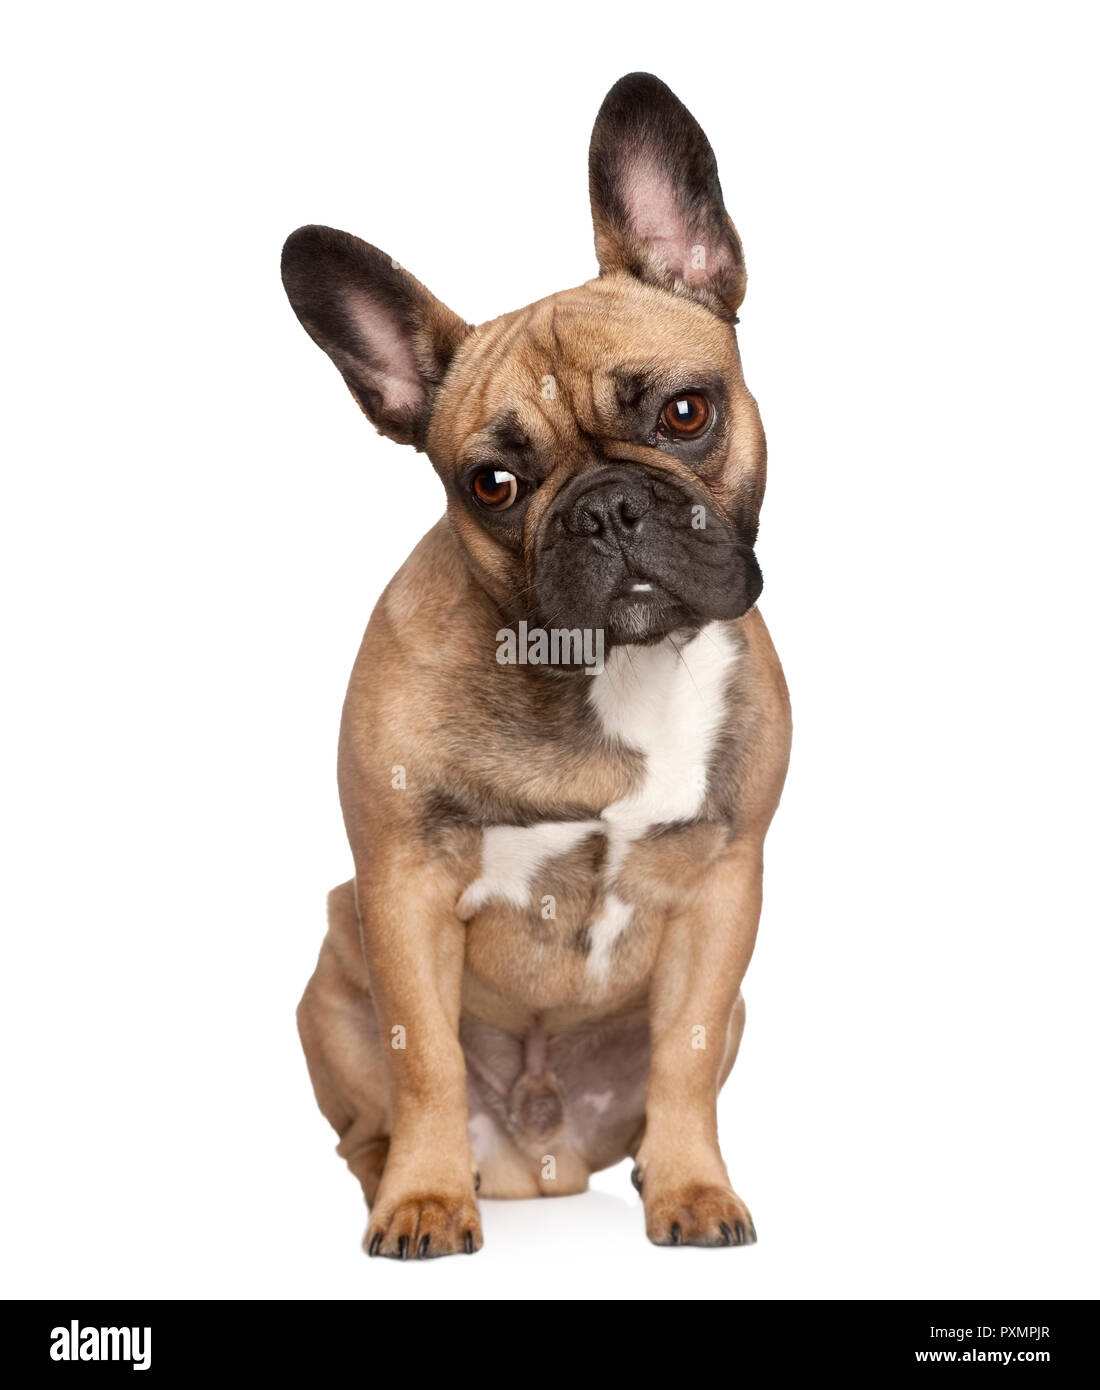 Ritratto di bulldog francese di fronte a uno sfondo bianco, studio shot Foto Stock